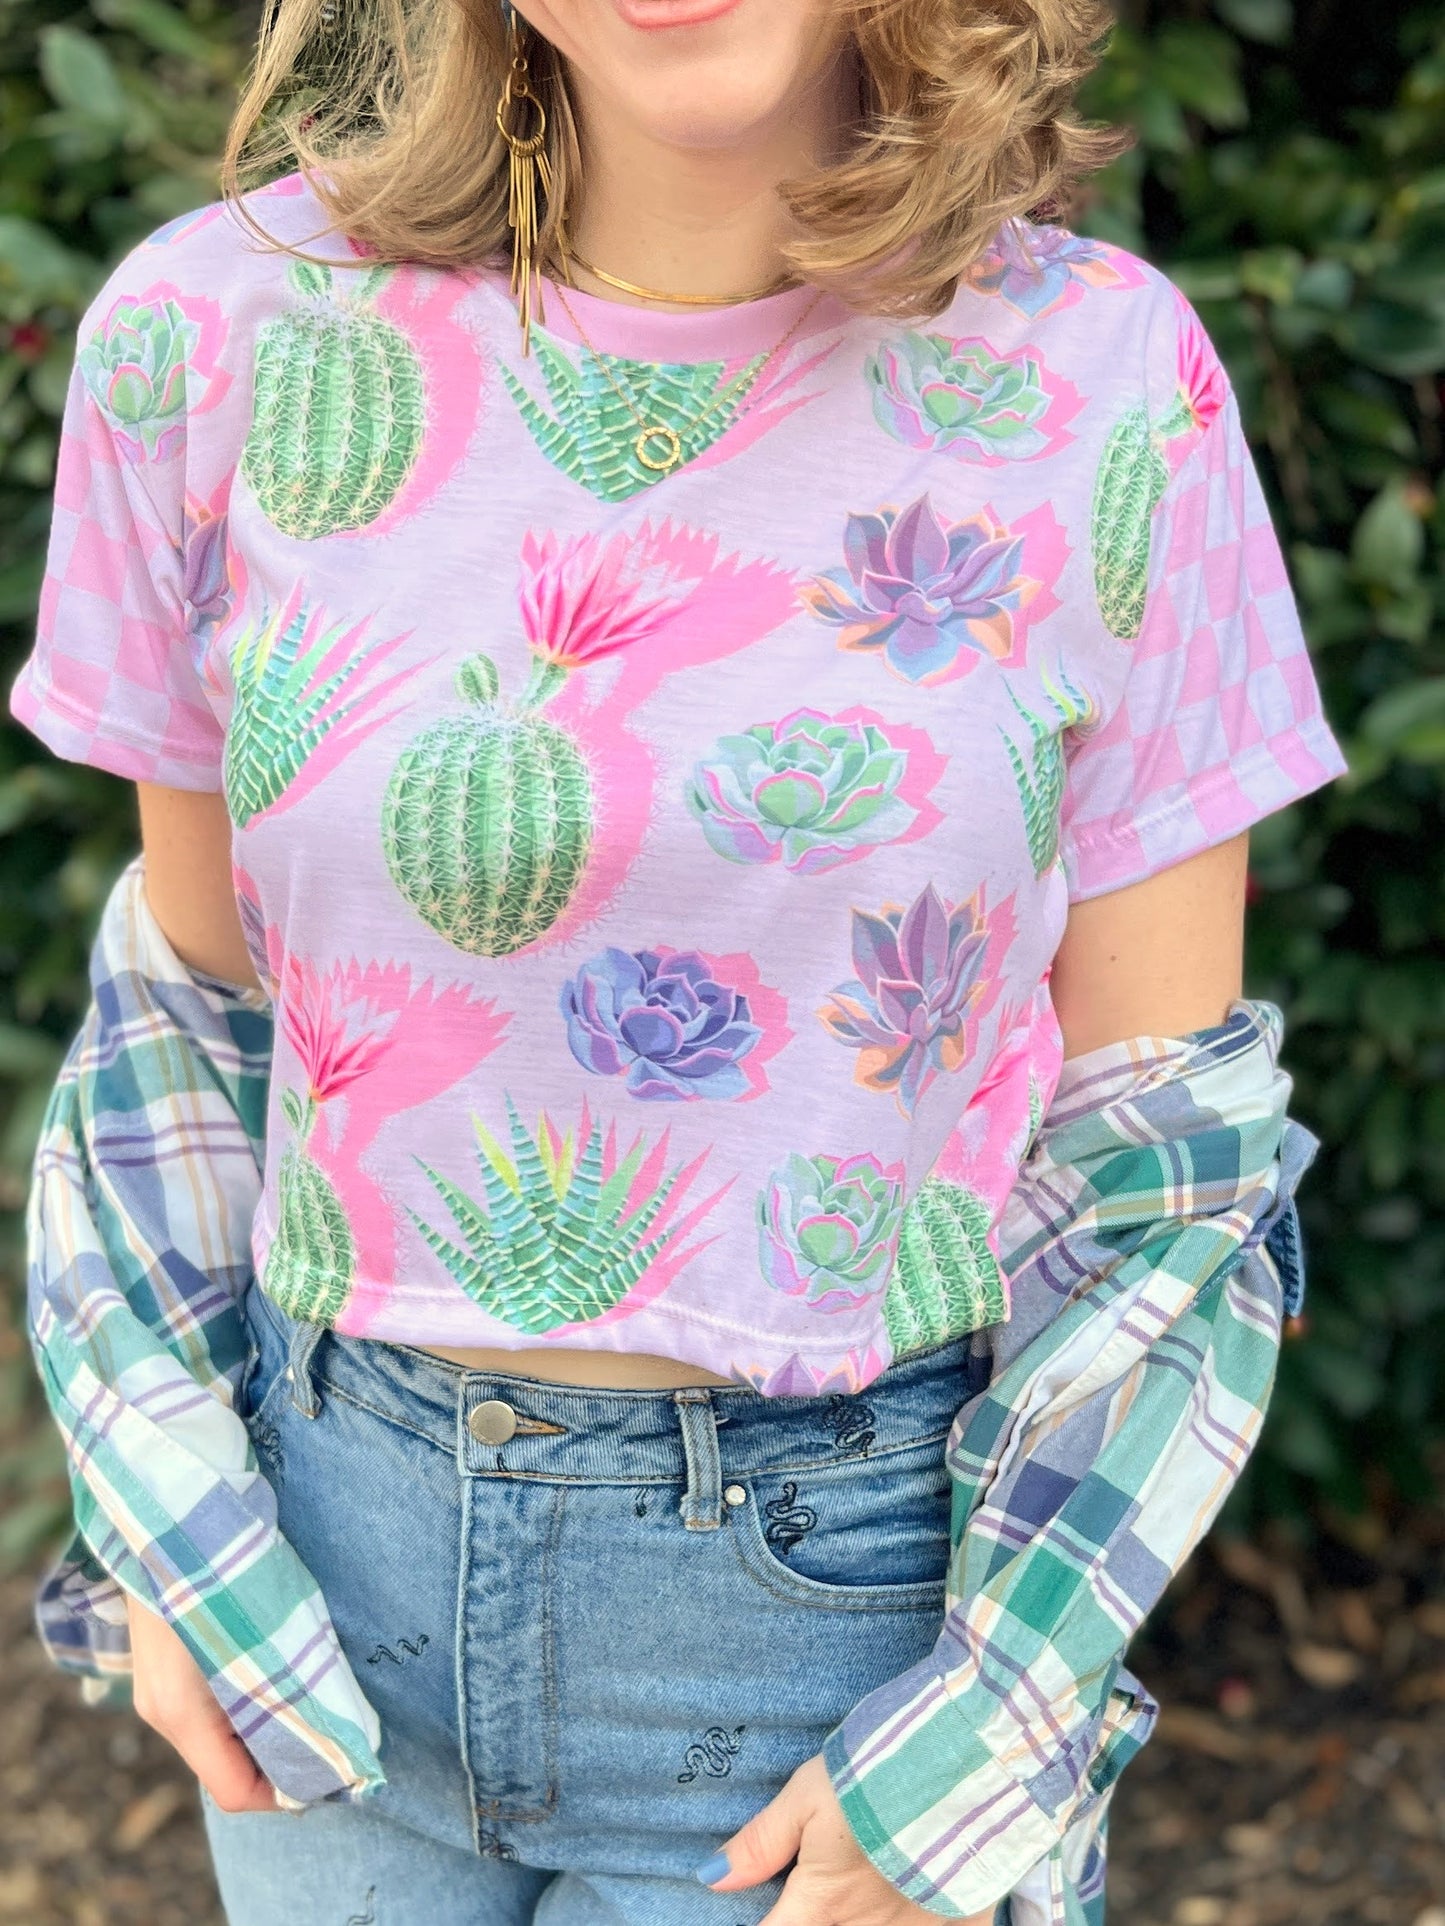 Succulent Cactus Crop Top Pink Checkered Crop Top